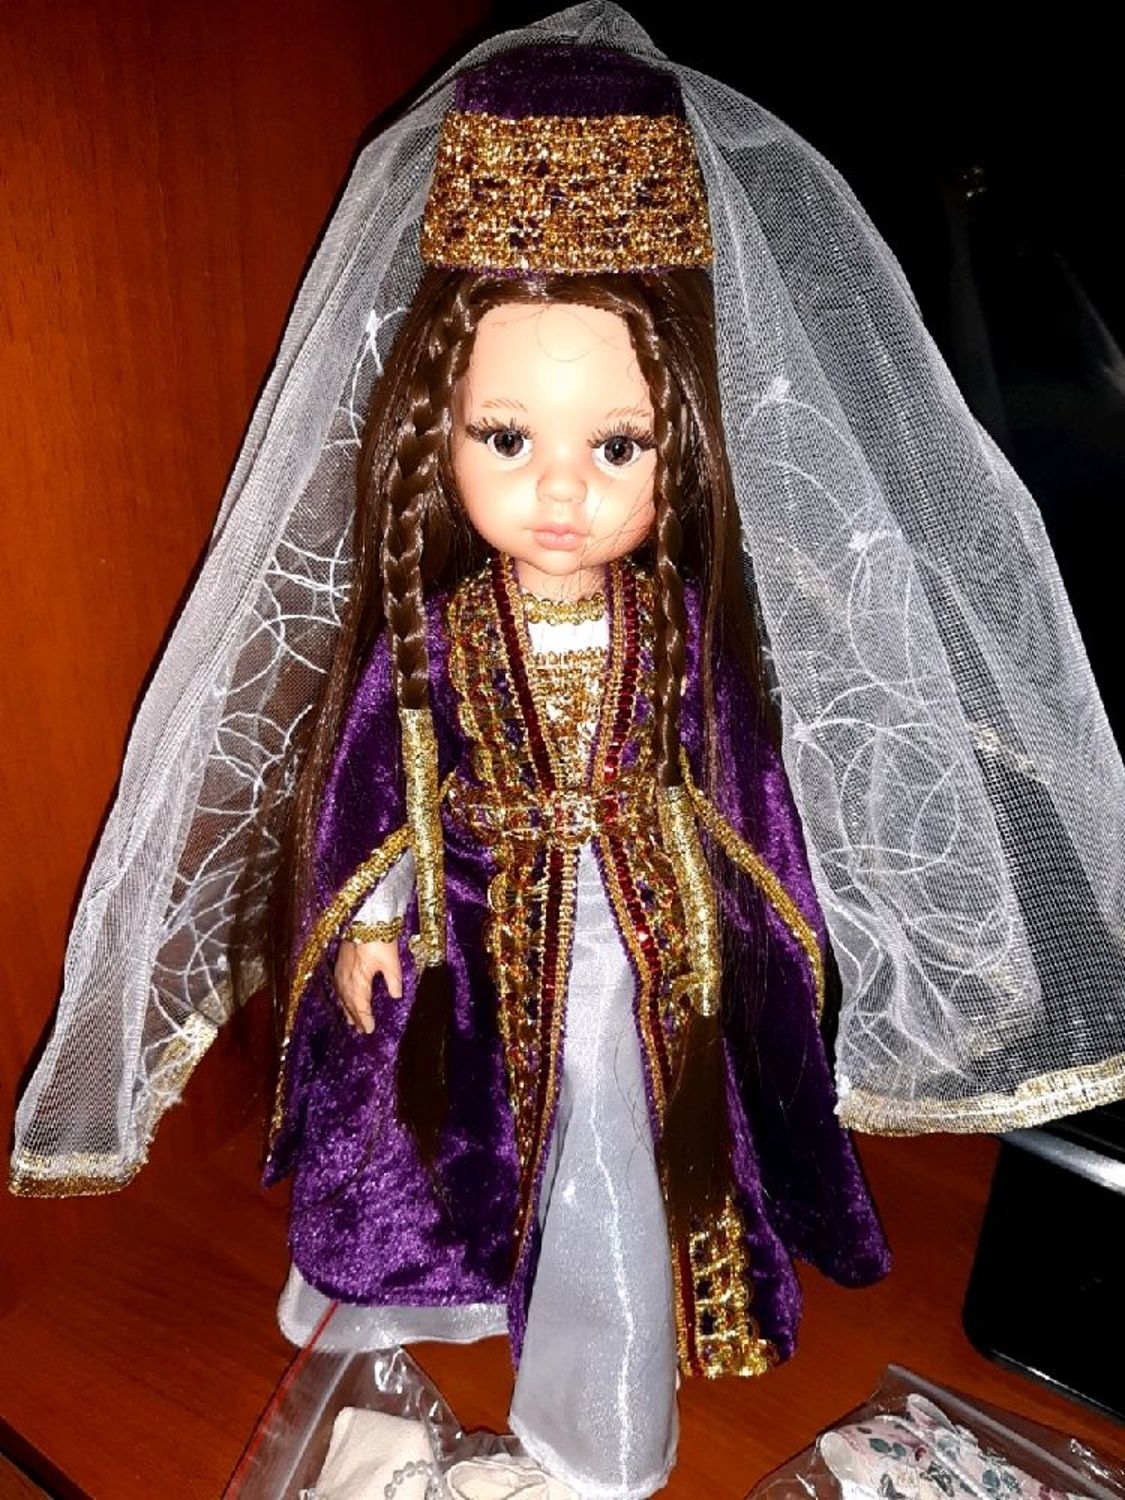 Фото №1 к отзыву покупателя Лариса о товаре Народная кукла: Paola Reina в традиционном осетинском наряде